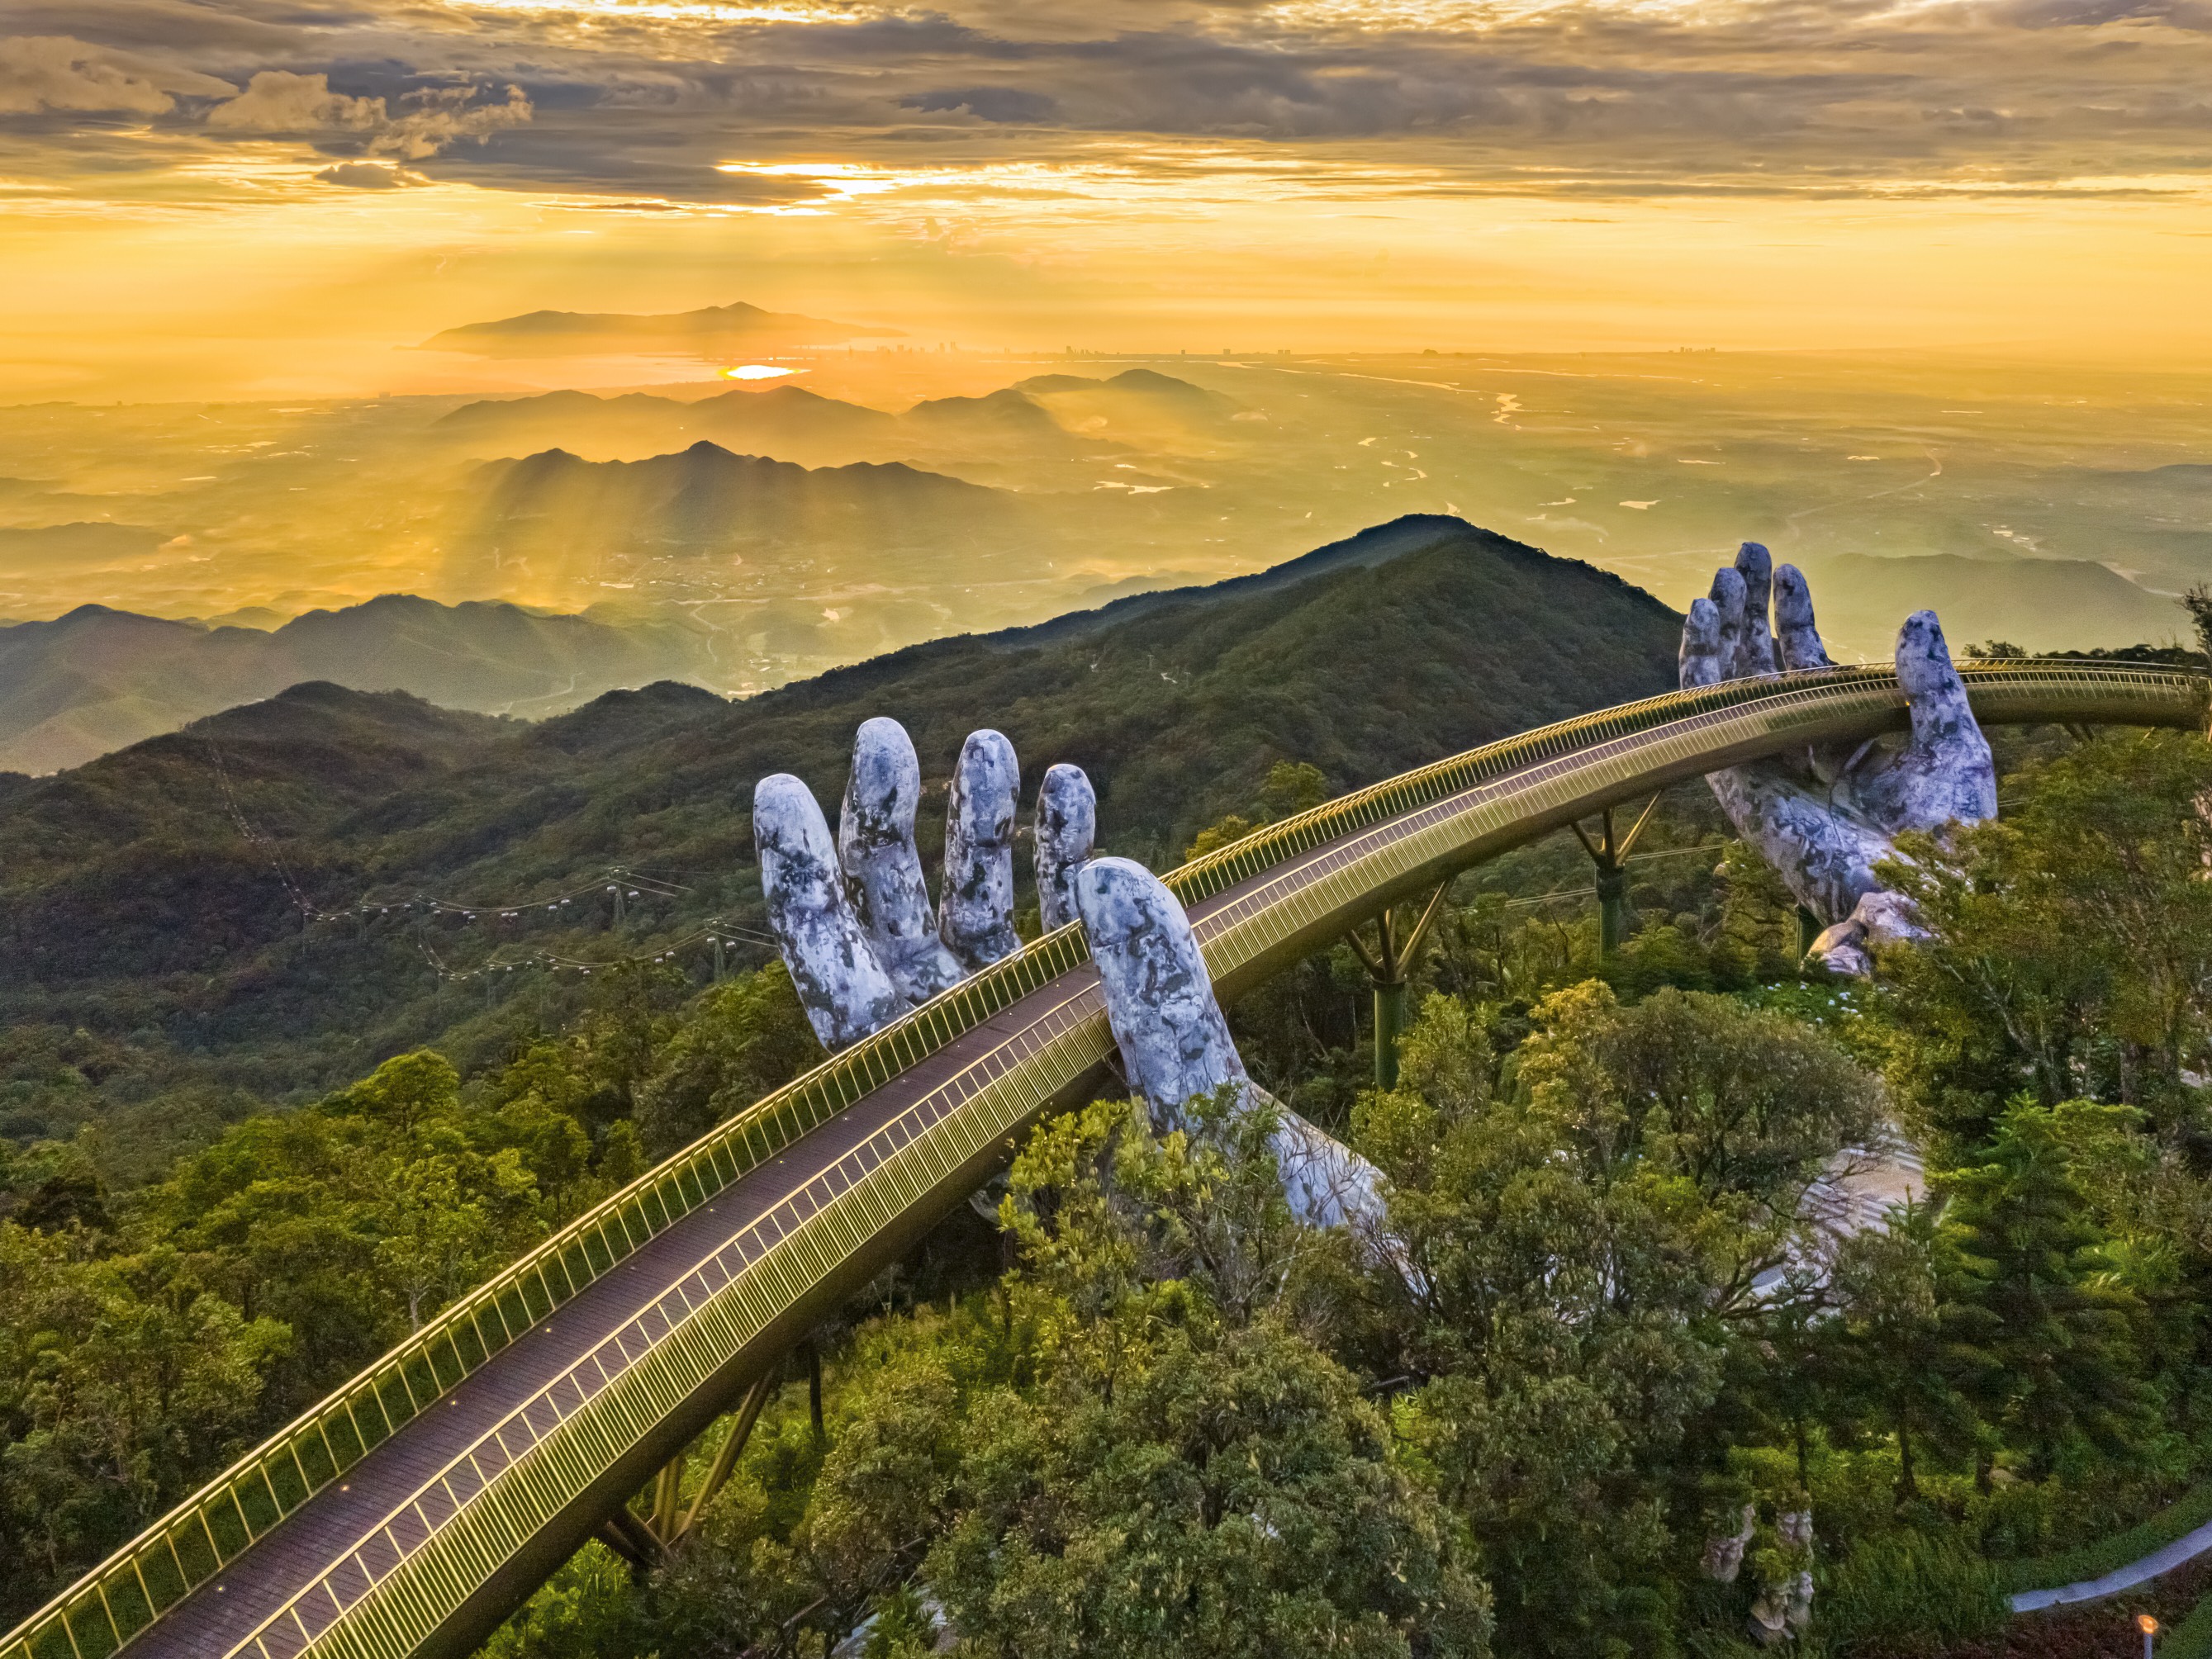 Cầu Vàng tại Bà Nà Hills đã góp phần đưa Đà Nẵng trở thành điểm phải đến trong đời của đông đảo du khách trong, ngoài nước.